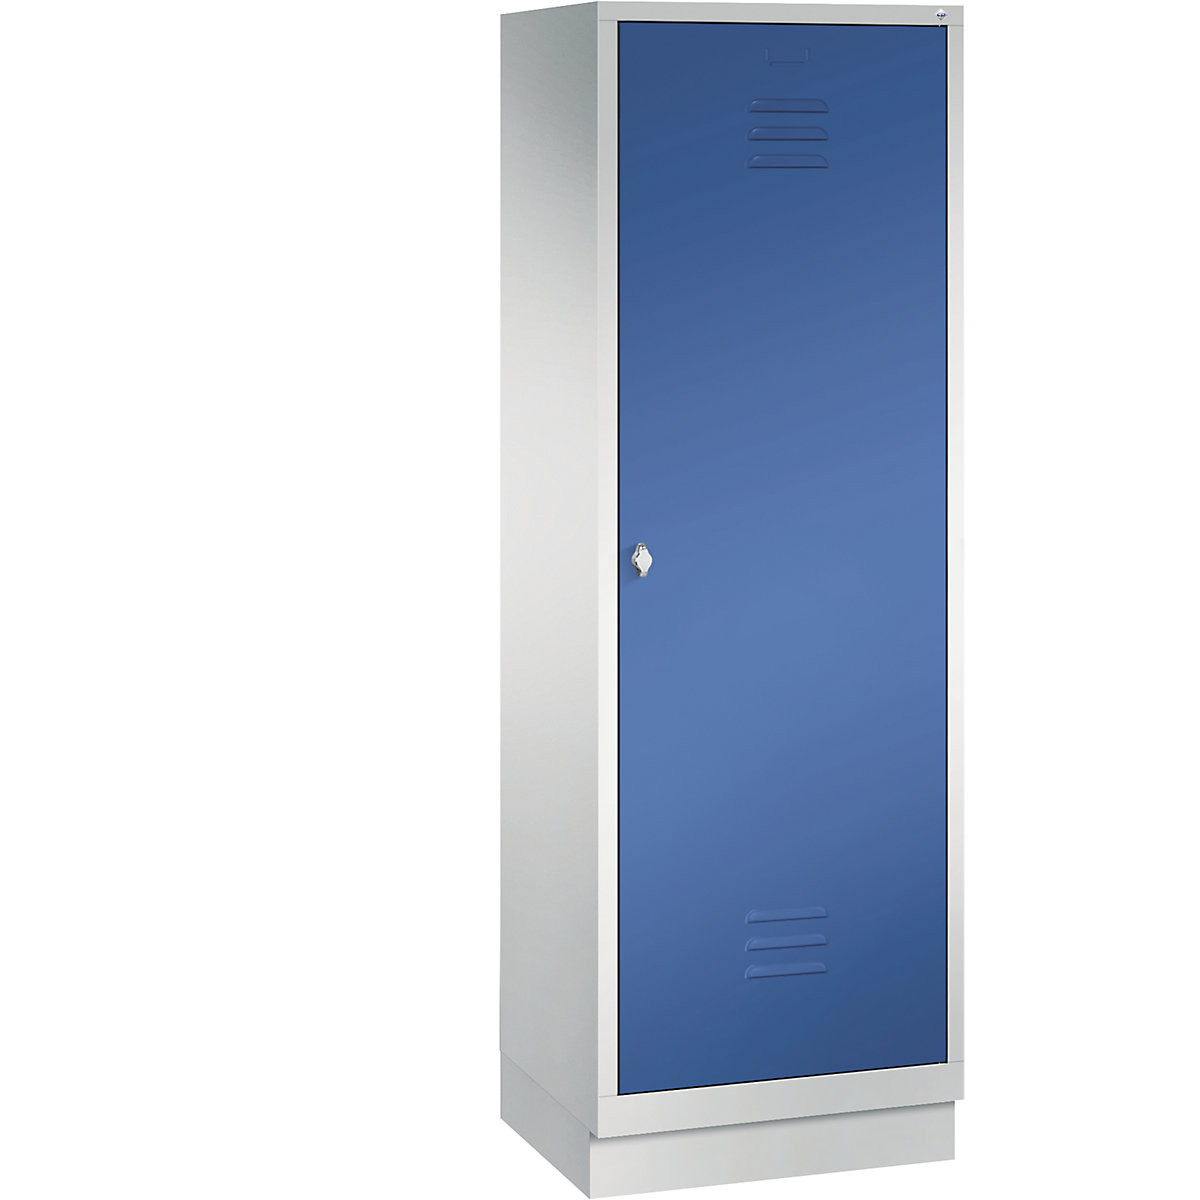 CLASSIC Garderobenschrank mit Sockel, Tür über 2 Abteile C+P, 2 Abteile, Abteilbreite 300 mm, lichtgrau / enzianblau-10